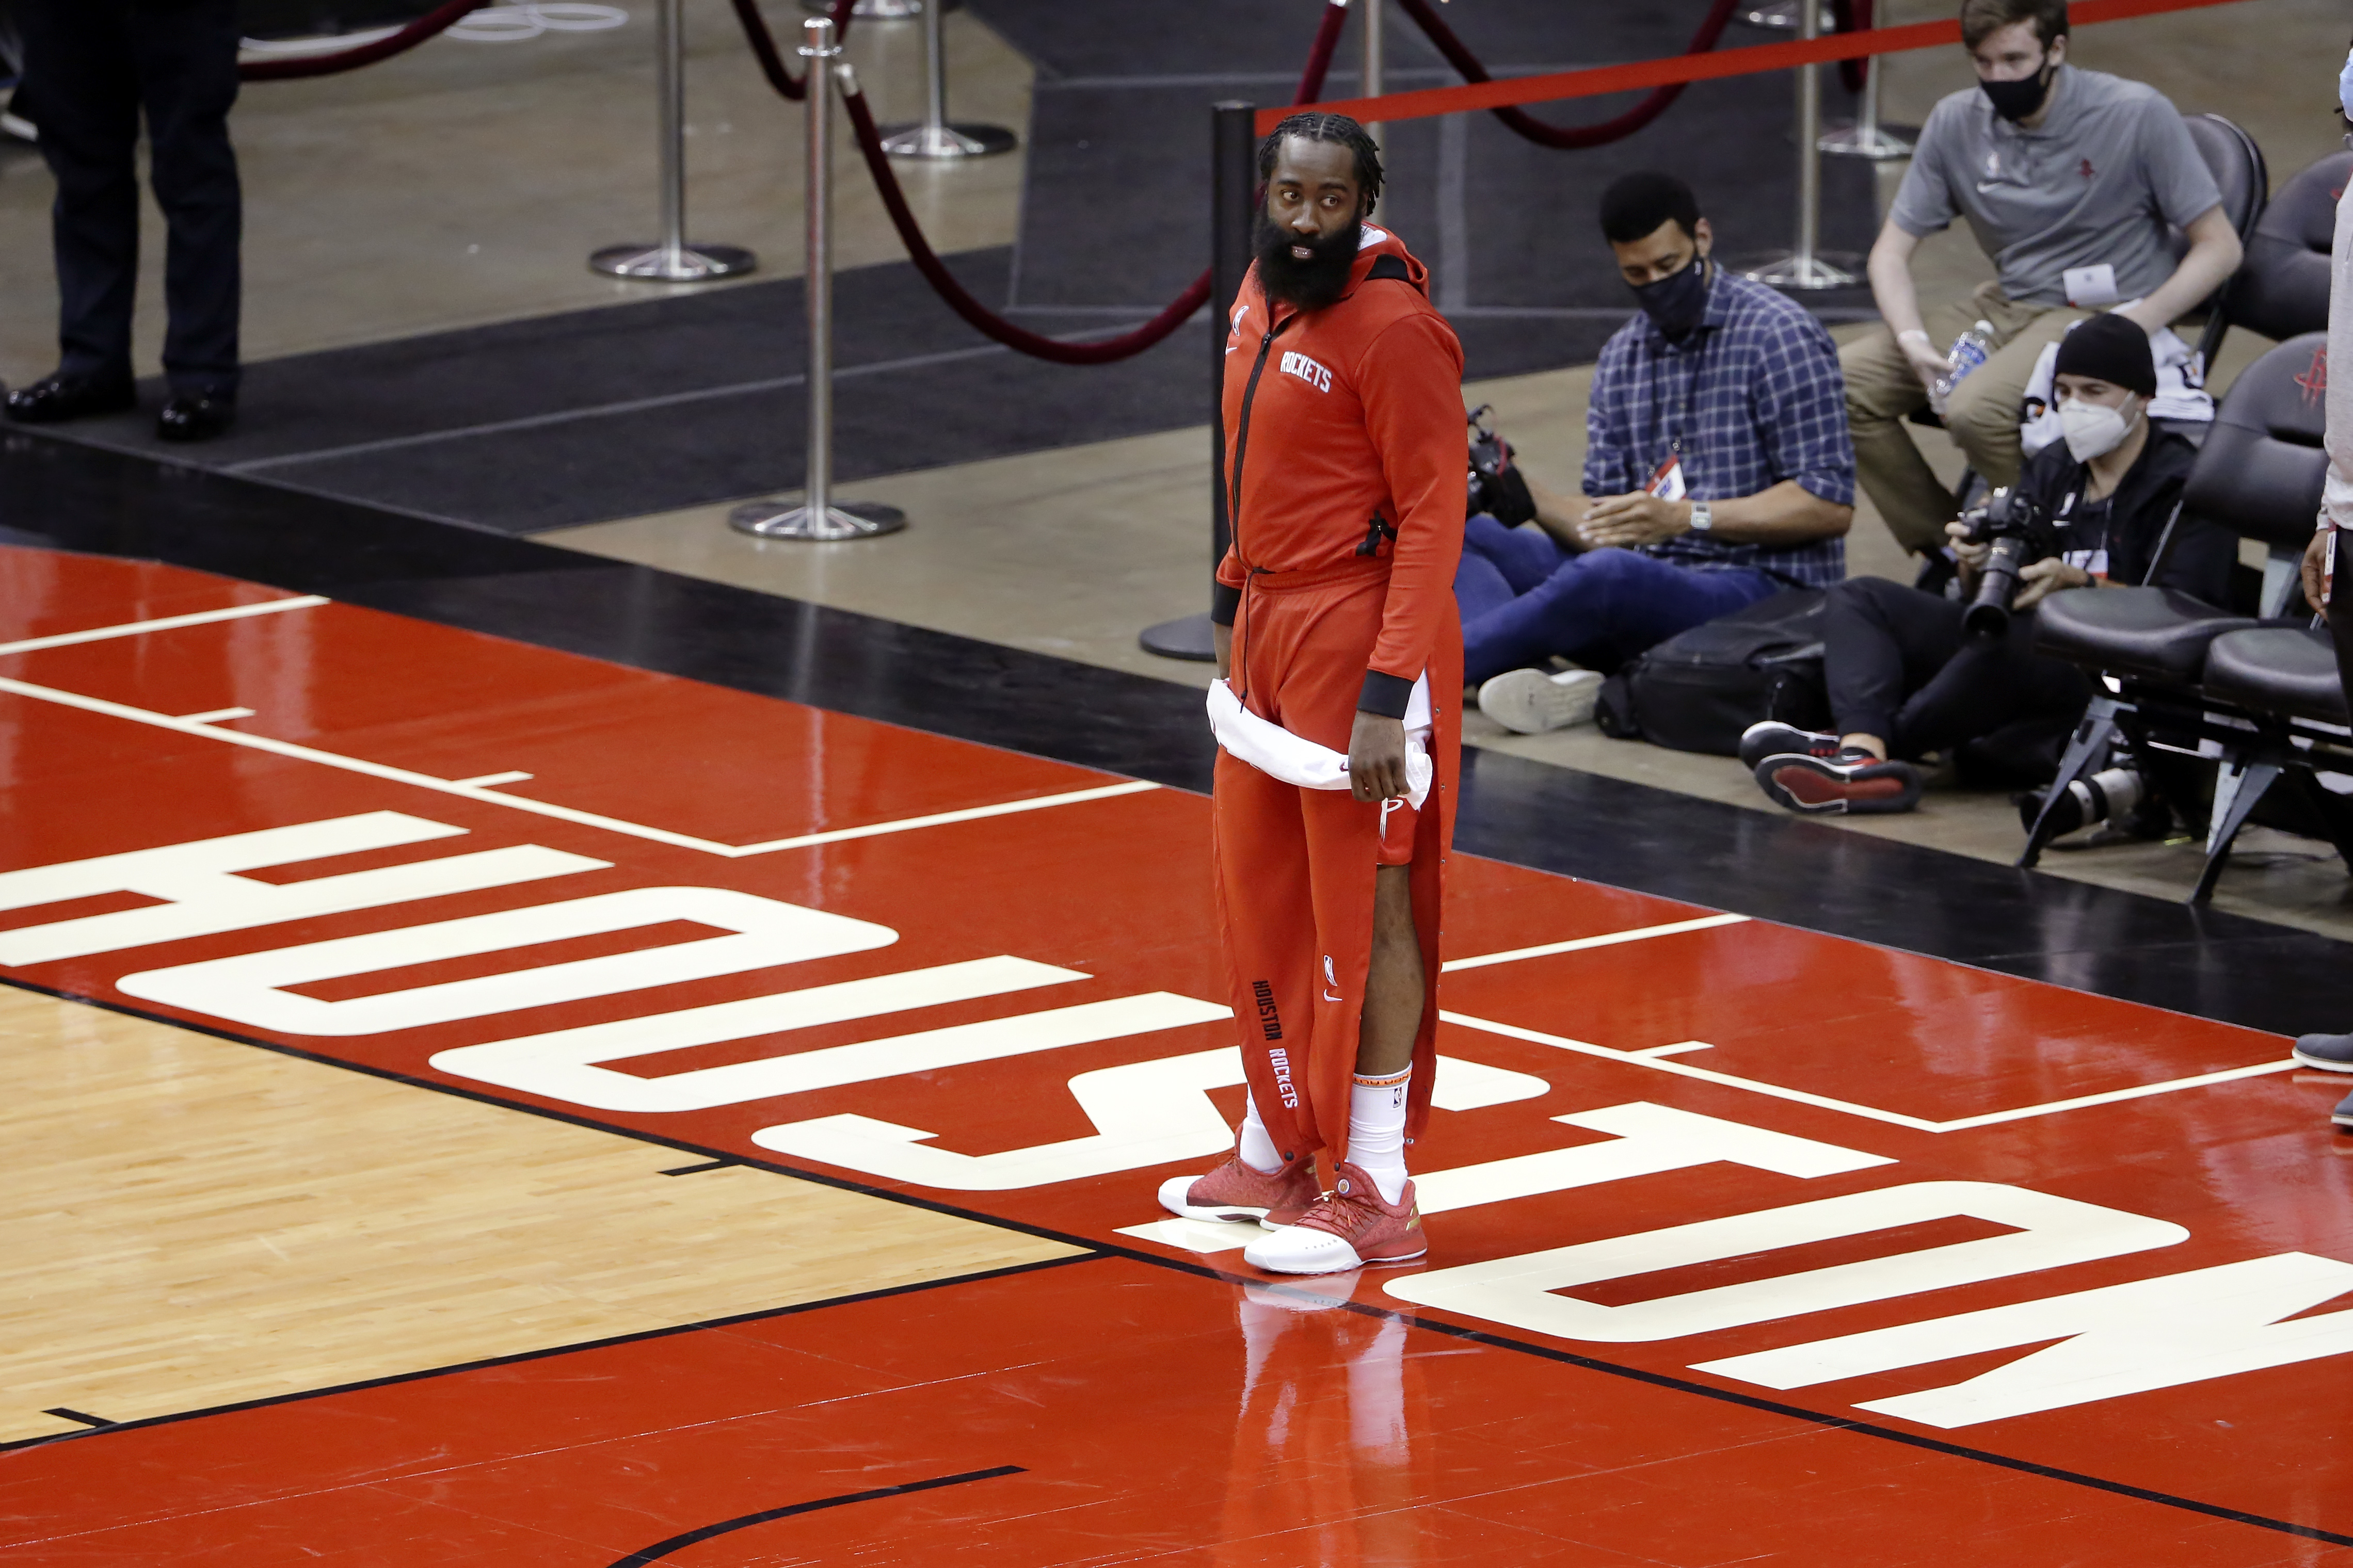 Estrella de la NBA generó polémica en redes por su sobrepeso en un juego (FOTO)